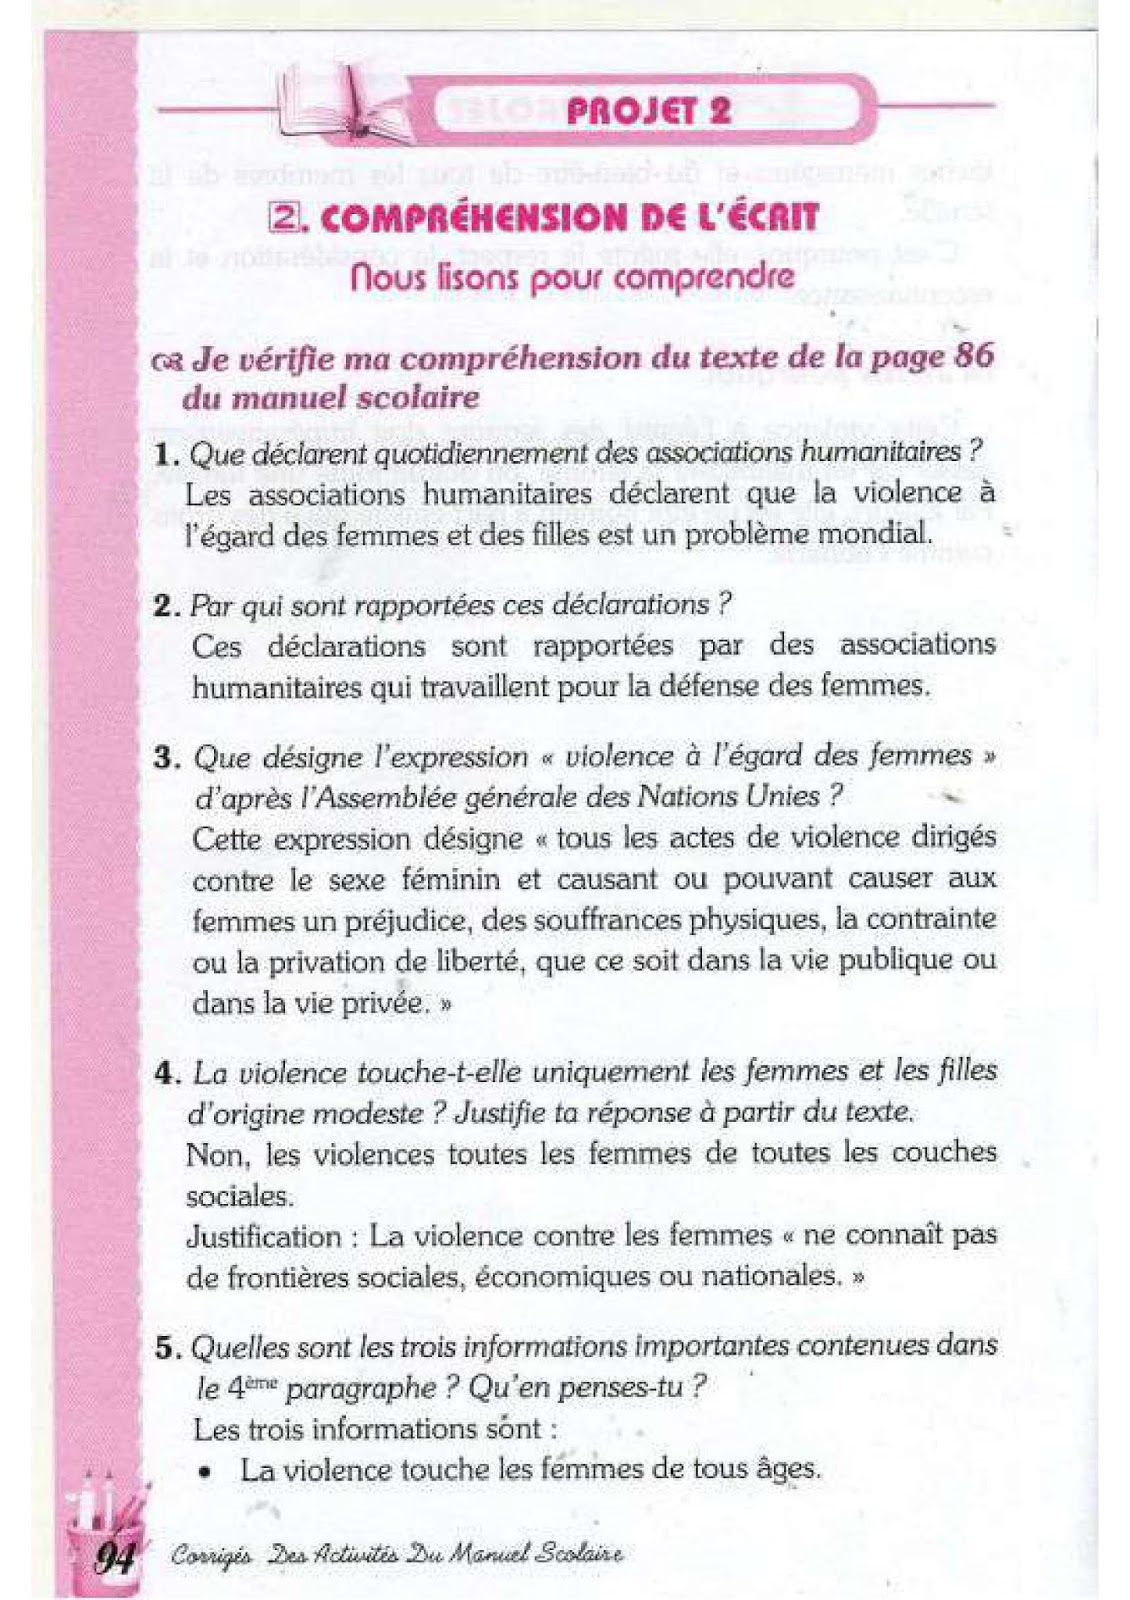 حل تمارين صفحة 86 الفرنسية للسنة الرابعة متوسط - الجيل الثاني